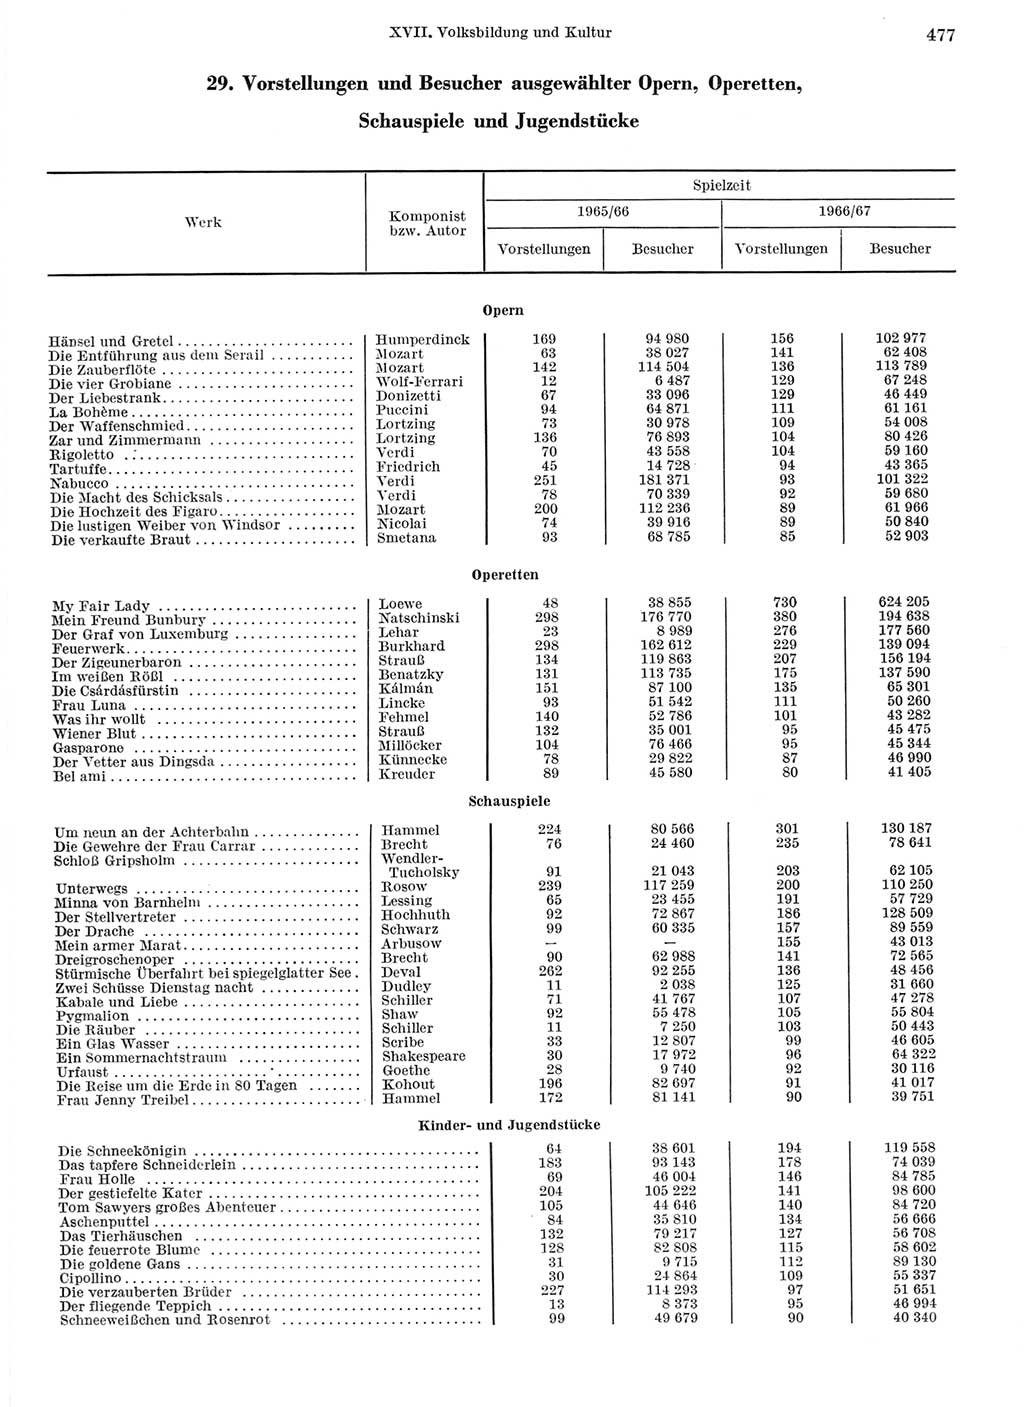 Statistisches Jahrbuch der Deutschen Demokratischen Republik (DDR) 1968, Seite 477 (Stat. Jb. DDR 1968, S. 477)